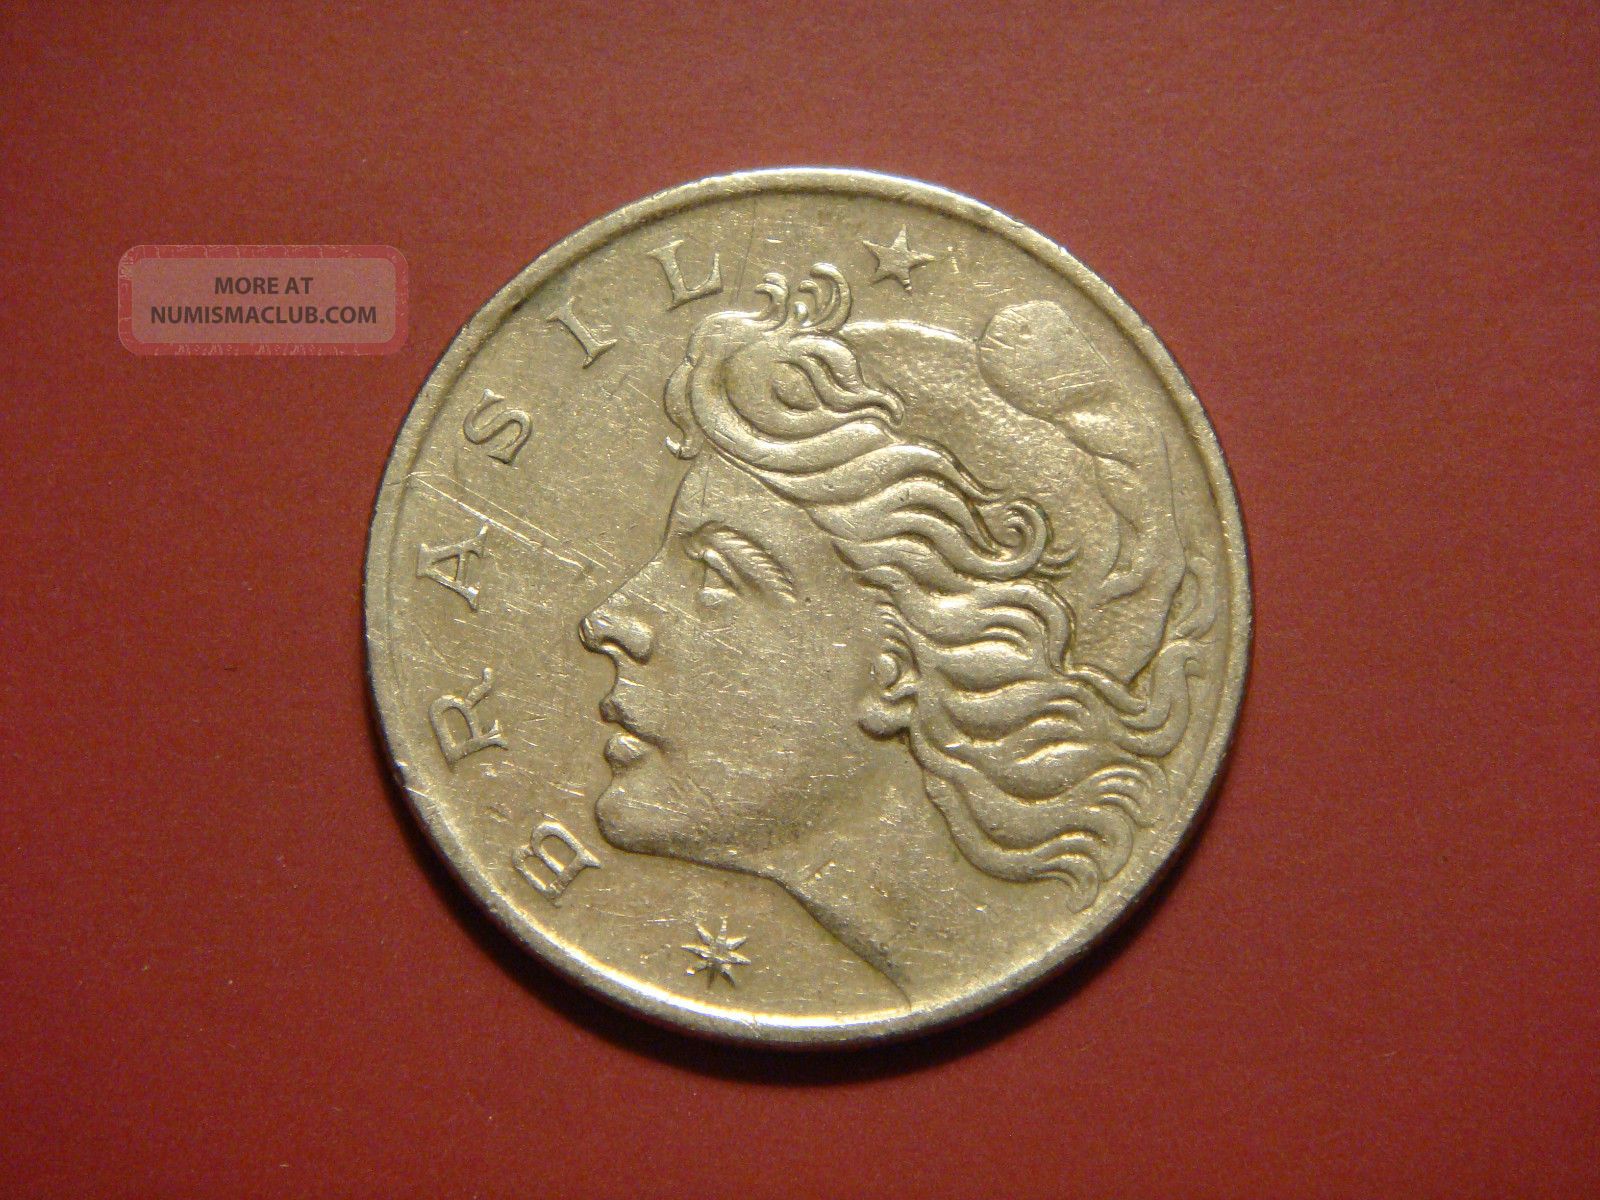 Brazil 50 Centavos, 1970 Coin